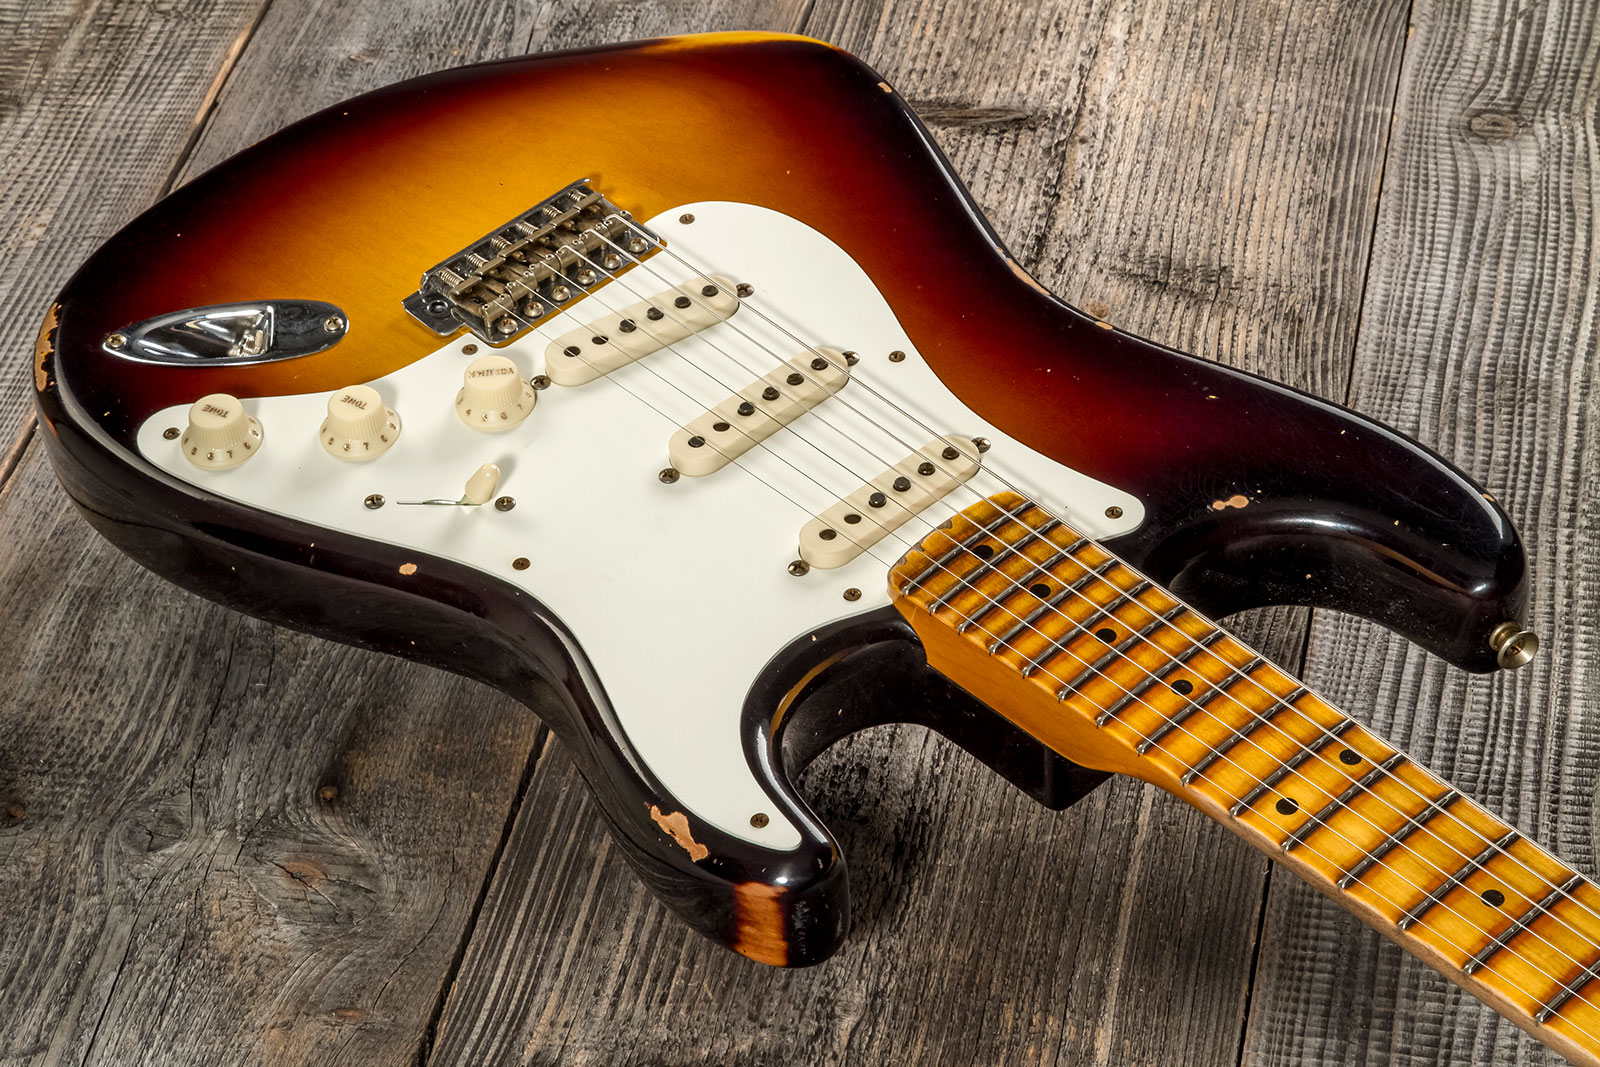 Fender Custom Shop Strat 1957 3s Trem Mn #cz575421 - Relic 2-color Sunburst - E-Gitarre in Str-Form - Variation 2